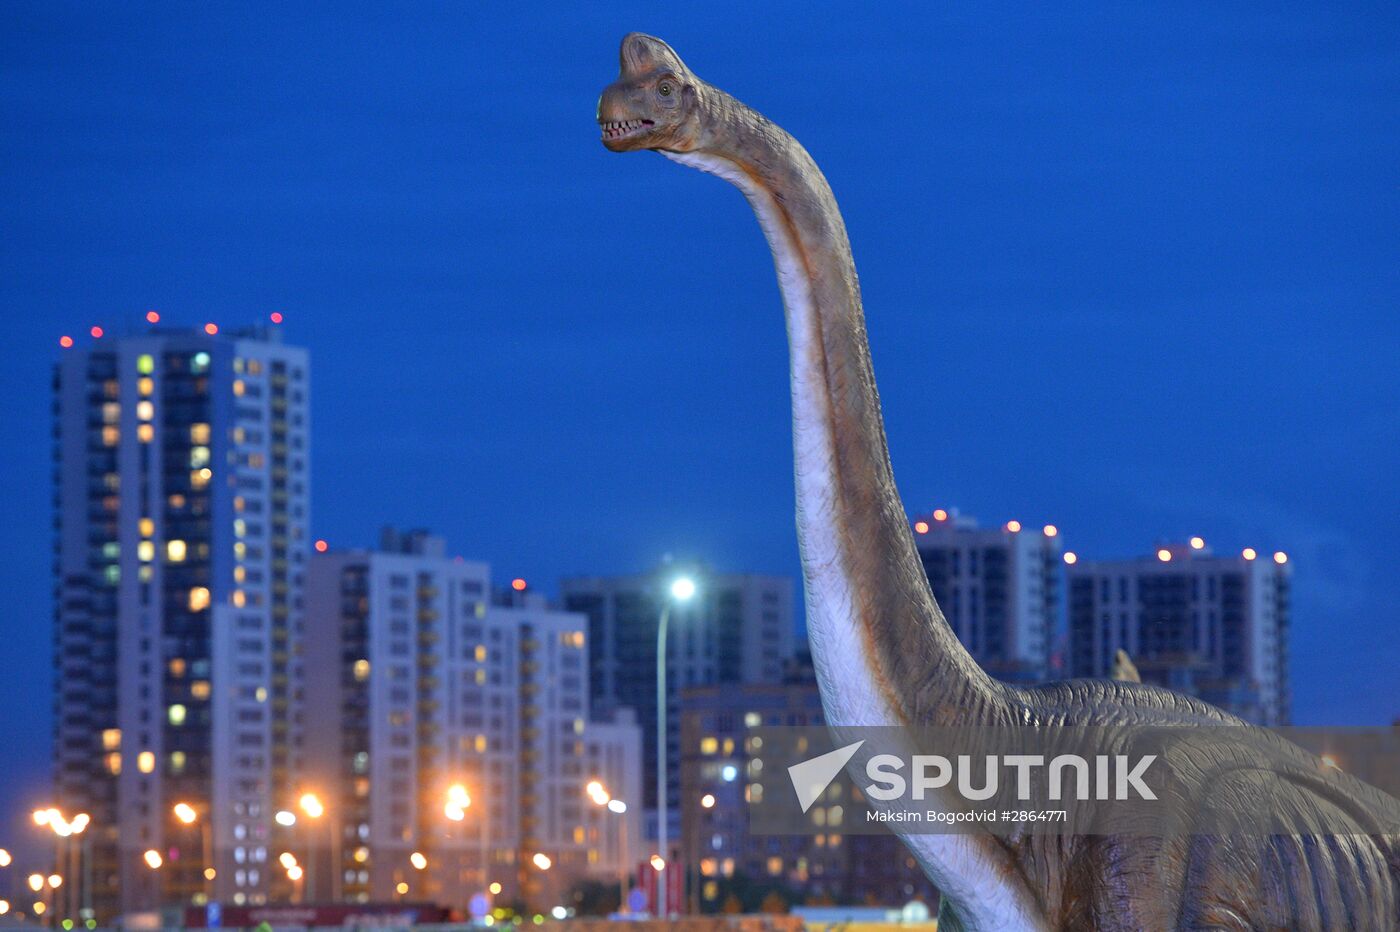 Yurkin Park Travel in Kazan